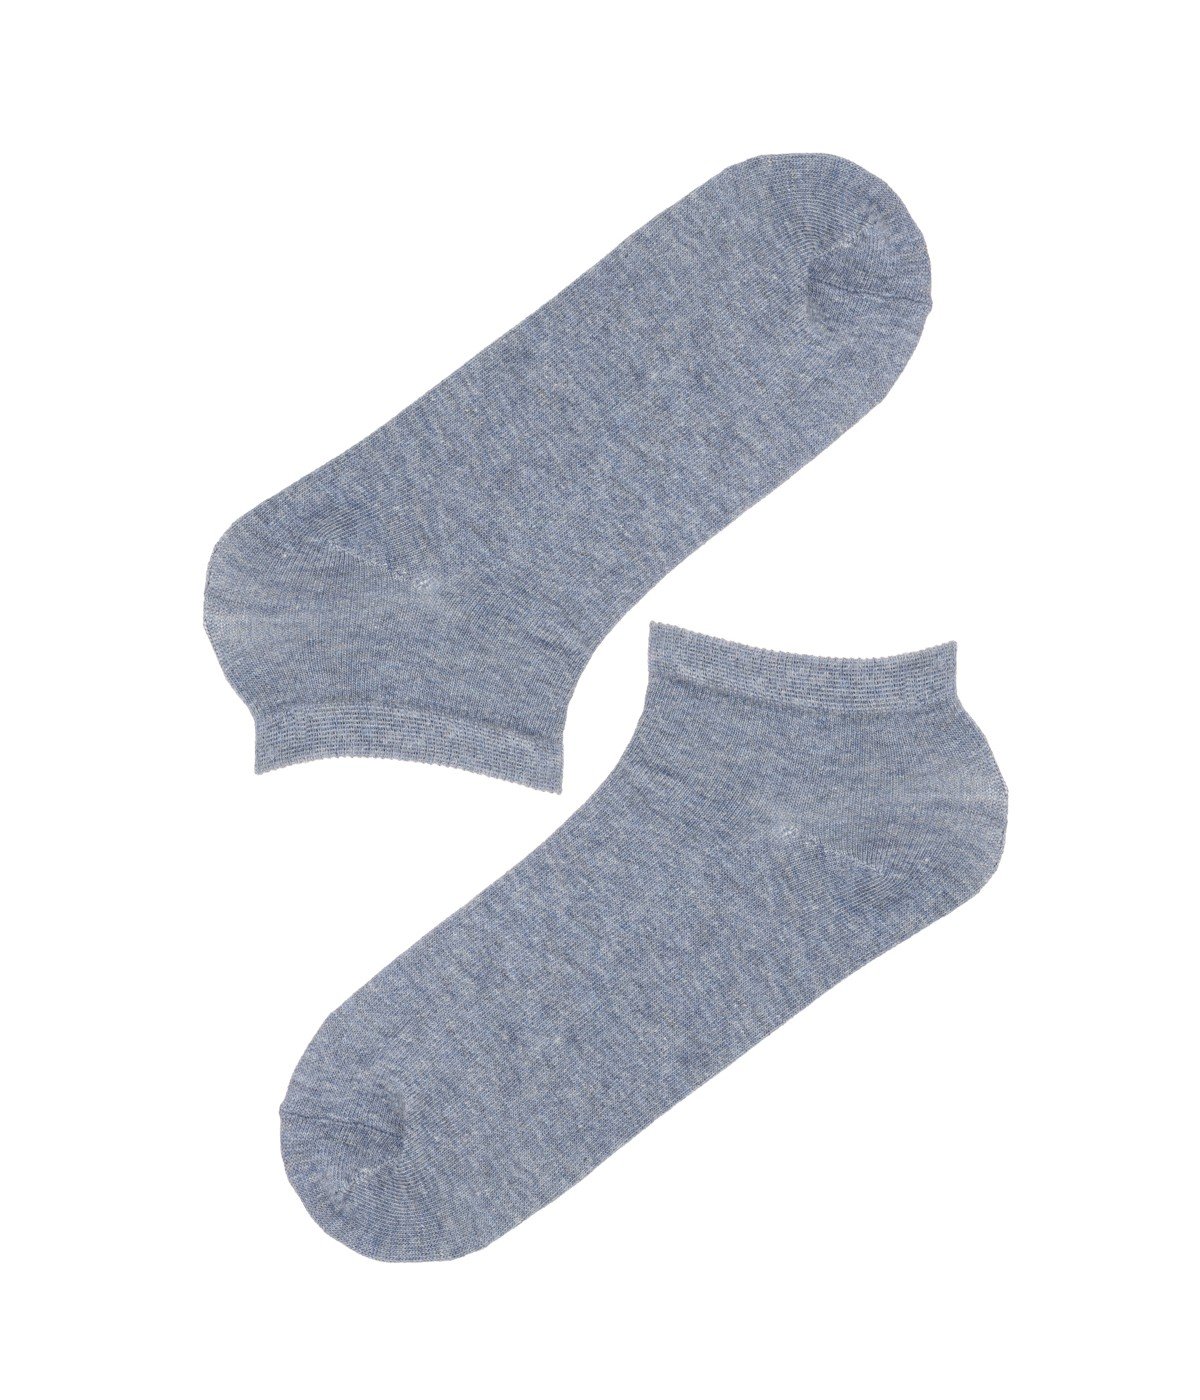 Basic 4 In 1 Socks